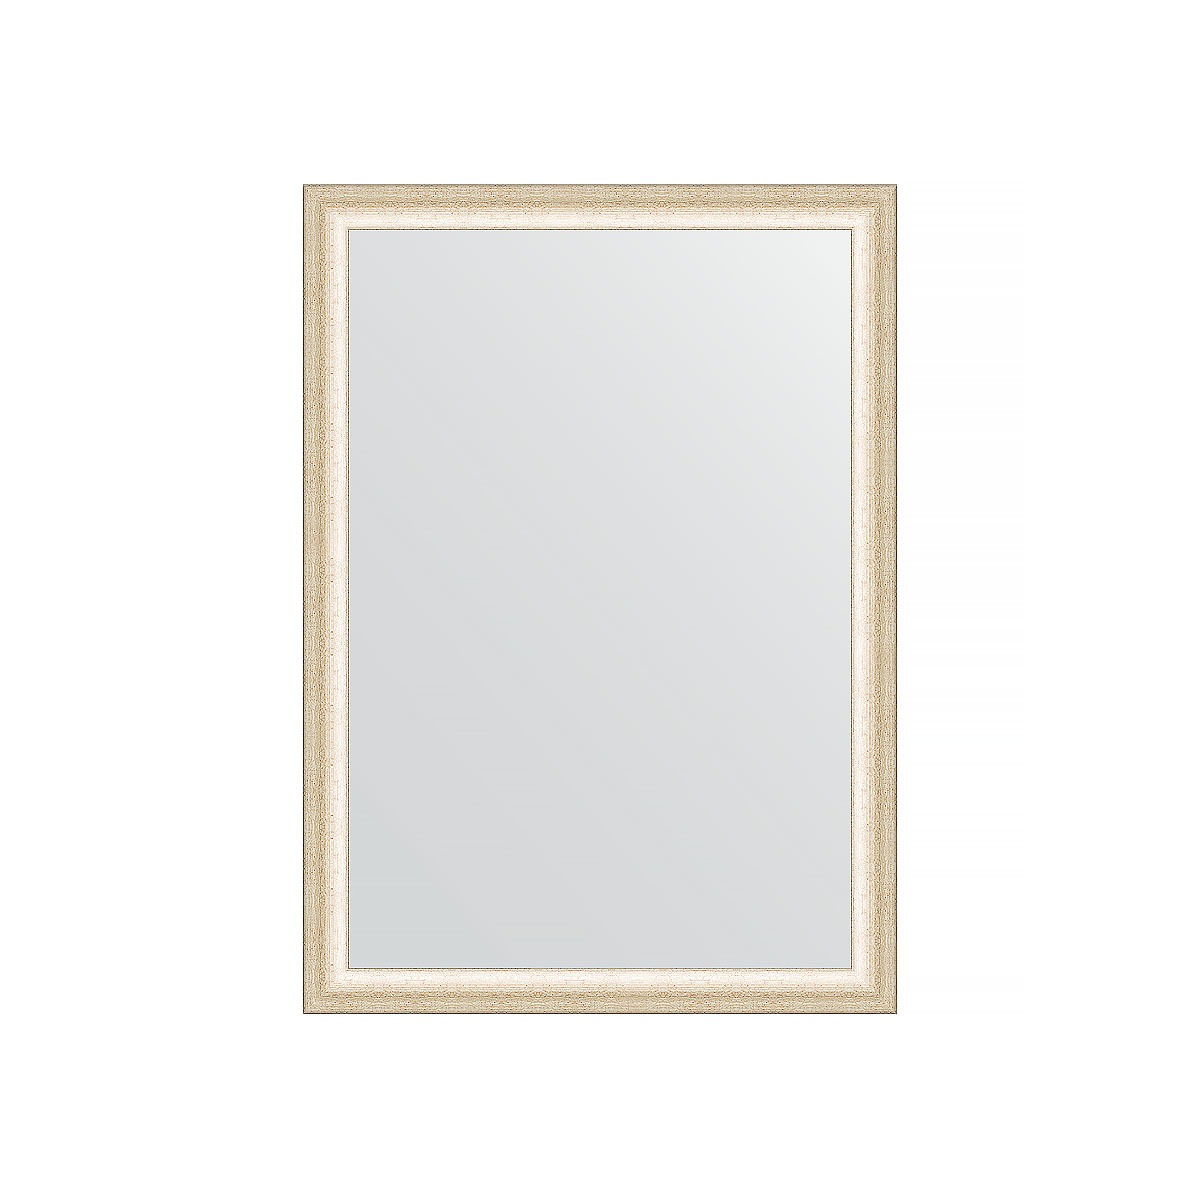 Зеркало в багетной раме Evoform состаренное серебро 37 мм 50х70 см зеркало в багетной раме evoform черненое серебро 38 мм 50х70 см